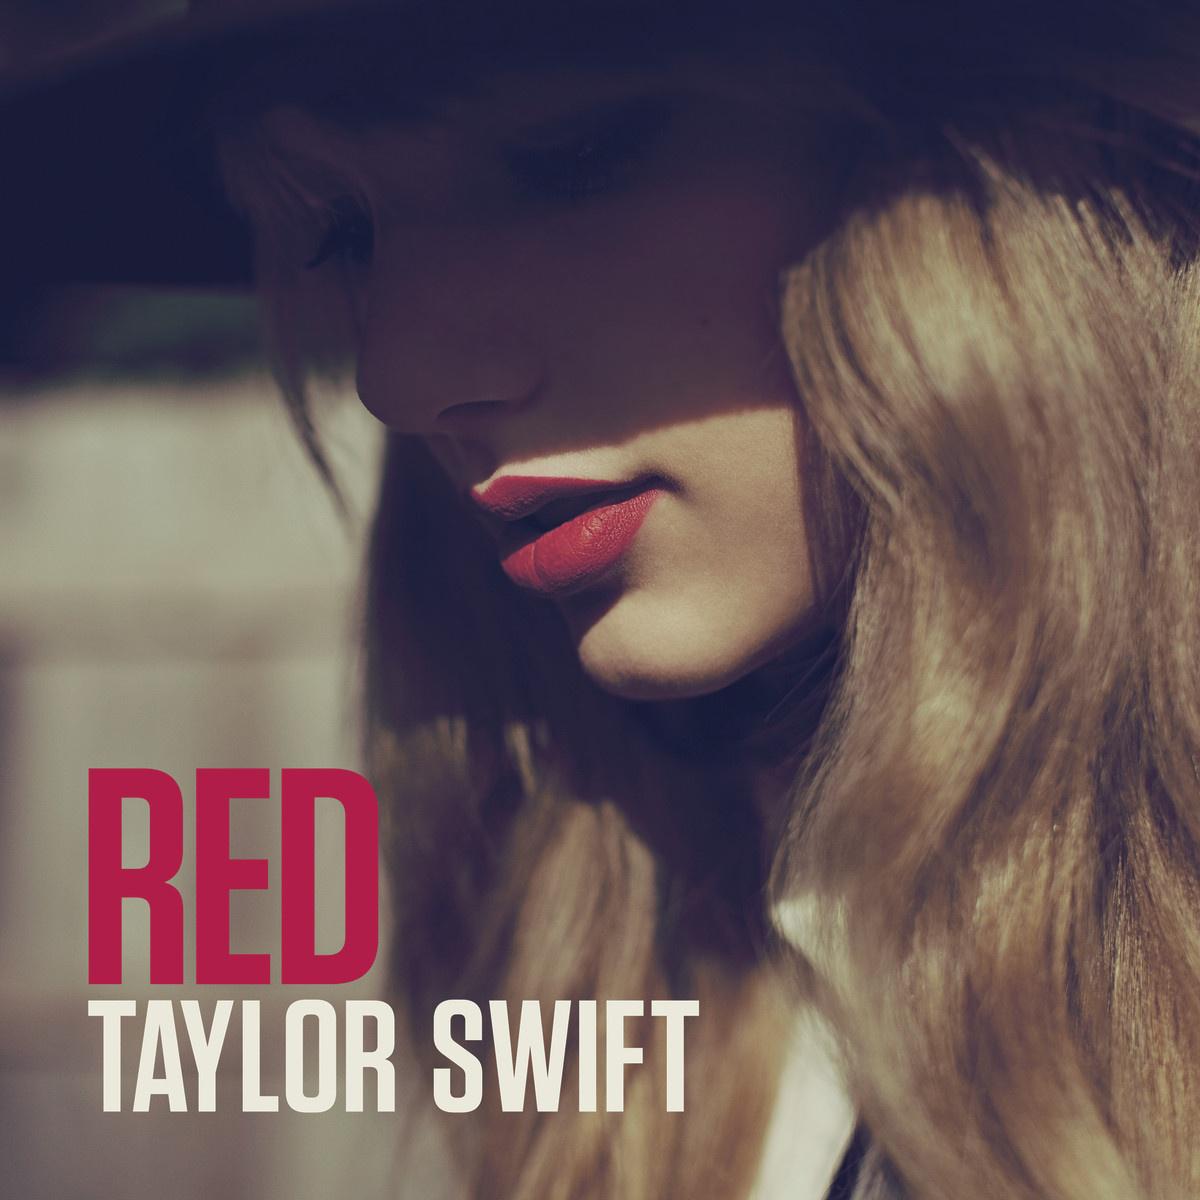 Treacherous歌词 歌手Taylor Swift-专辑Red-单曲《Treacherous》LRC歌词下载